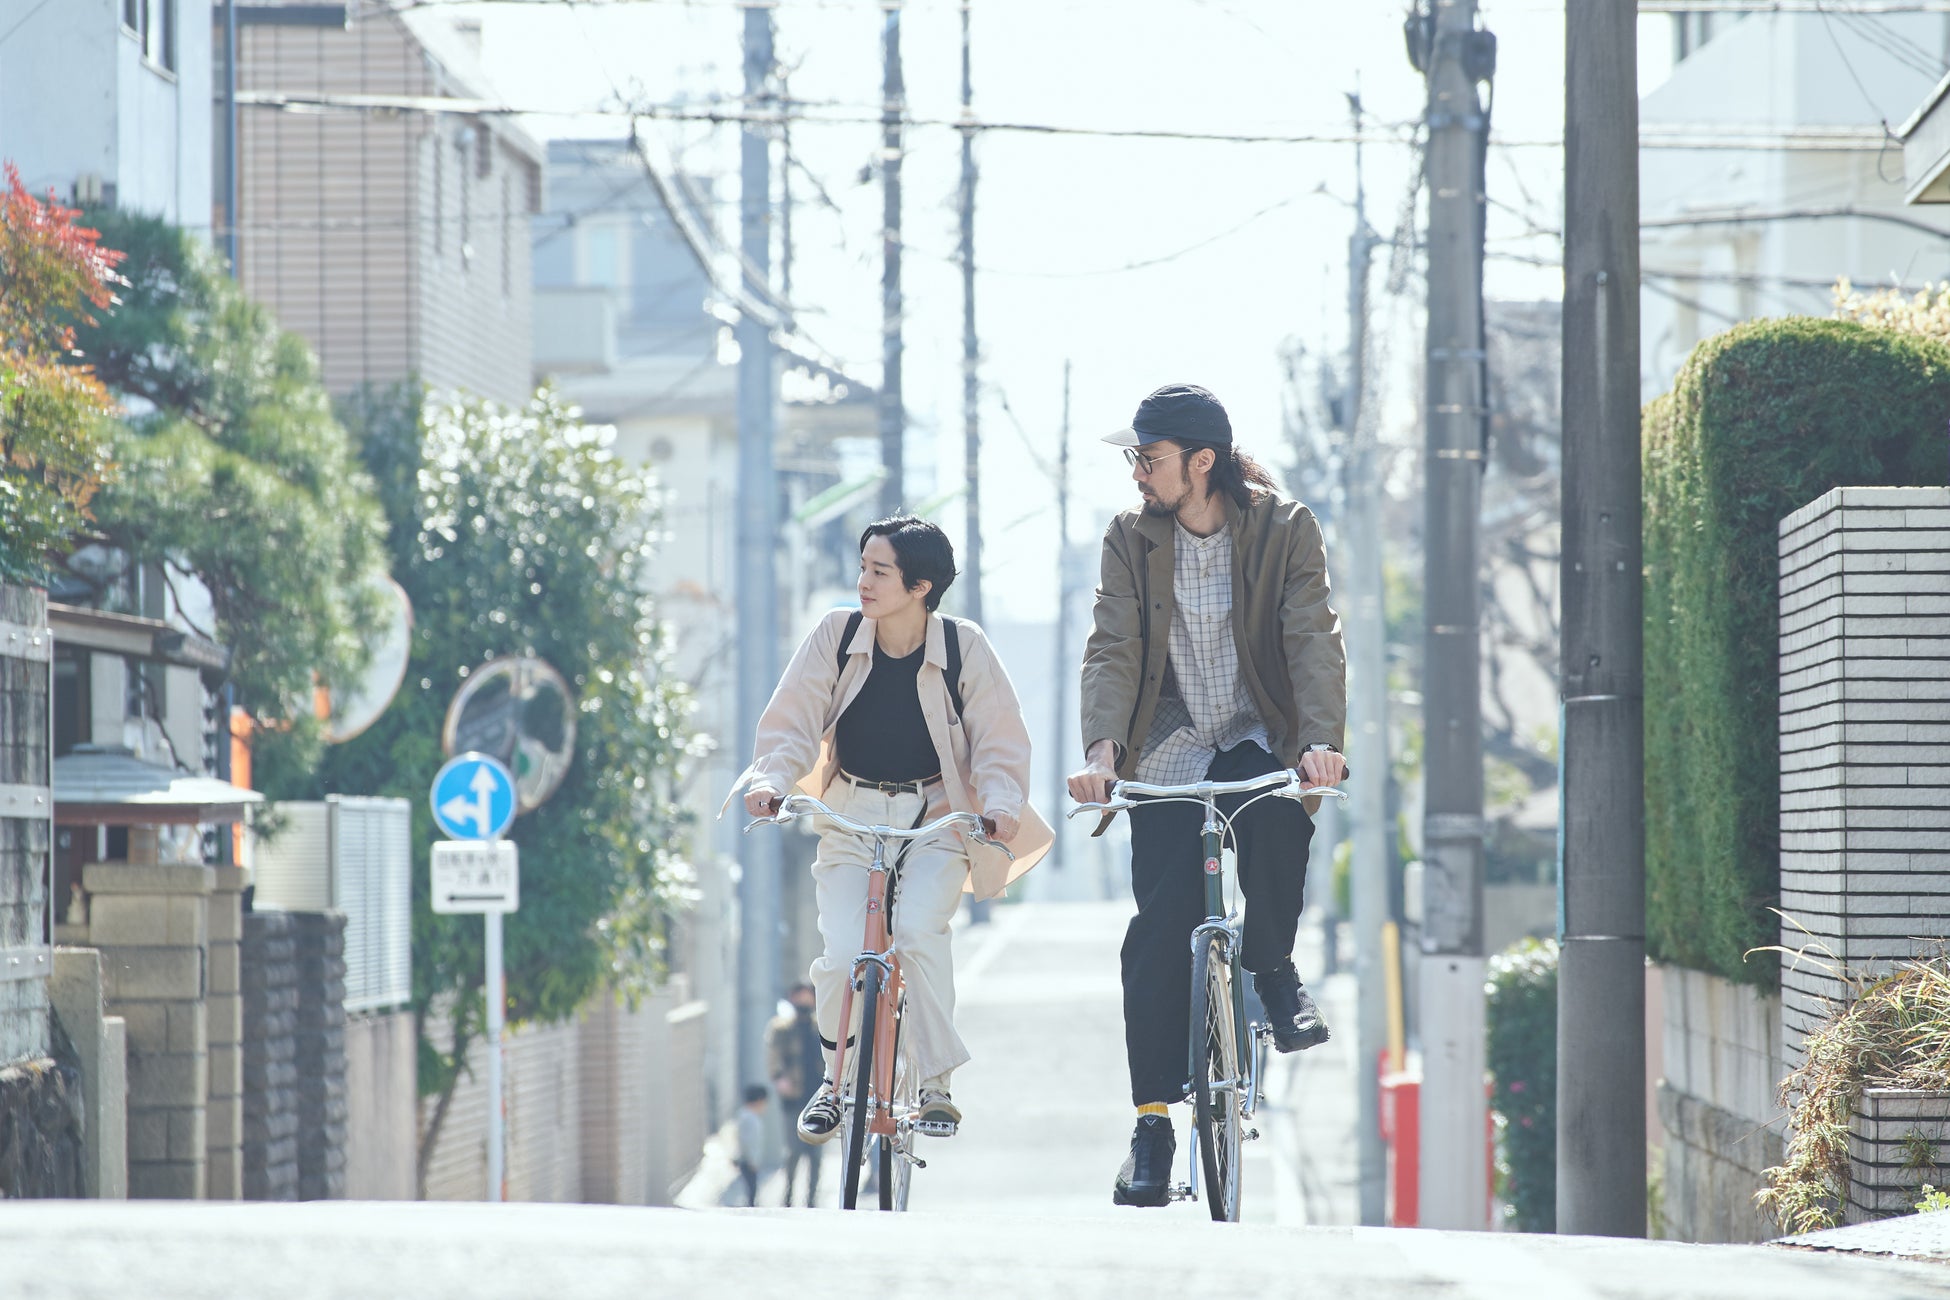 アウトドアコーヒーギア「Zebrang」×街を楽しむ自転車「tokyobike」のコラボ企画in清澄白河のサブ画像4